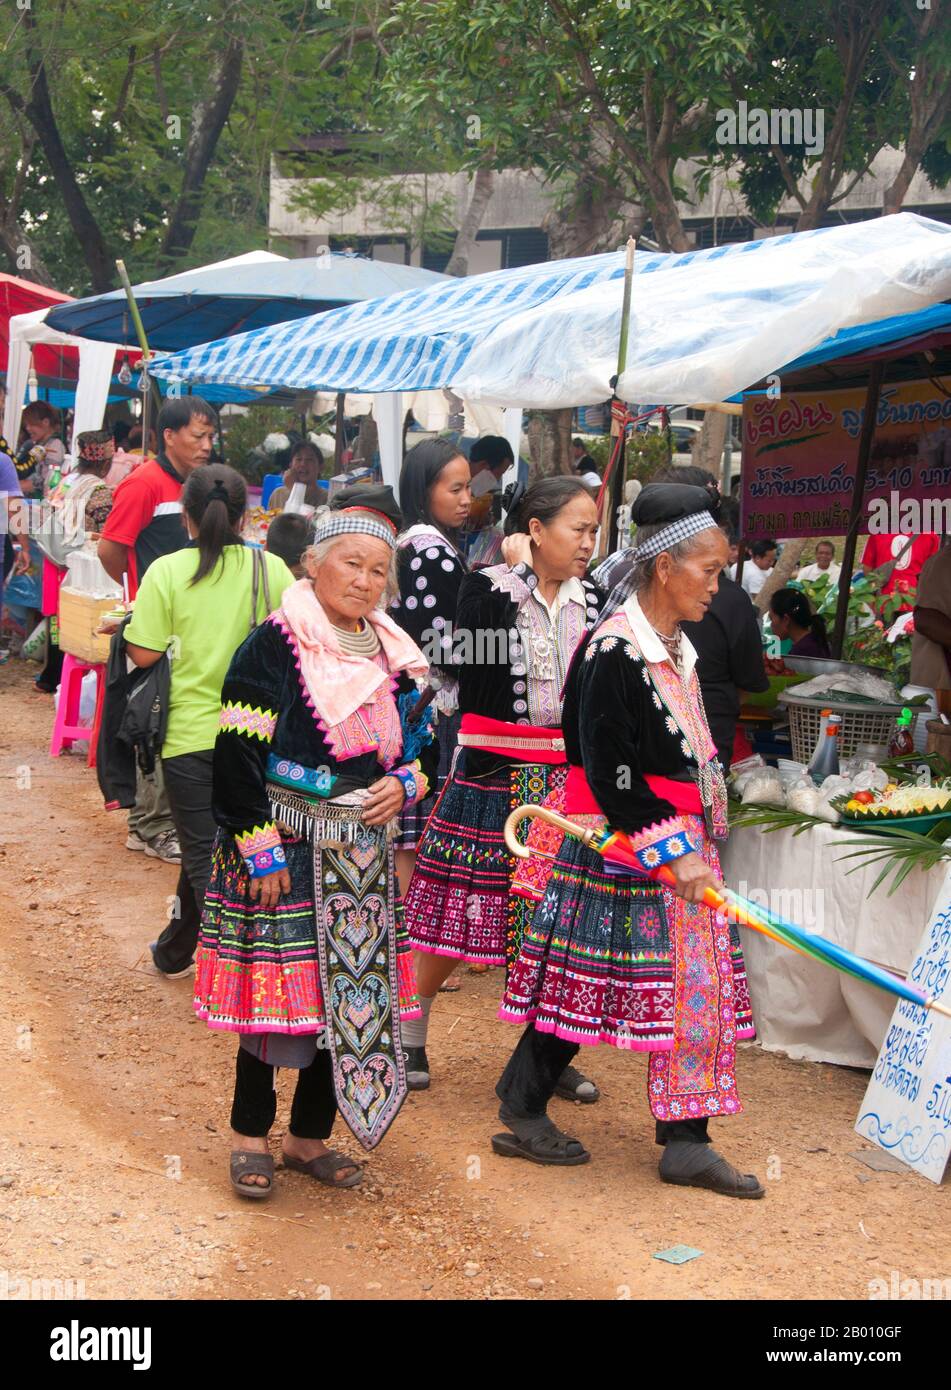 Thaïlande: Des femmes âgées Hmong perutilisant le marché aux célébrations du nouvel an de Hmong, Chiang Mai, dans le nord de la Thaïlande. La nouvelle année Hmong a généralement lieu en novembre ou en décembre (traditionnellement à la fin de la saison de récolte). Le Hmong est un groupe ethnique asiatique des régions montagneuses de Chine, du Vietnam, du Laos et de Thaïlande. Les Hmong sont également l'un des sous-groupes de l'ethnie Miao dans le sud de la Chine. Les groupes Hmong ont commencé une migration progressive vers le sud au XVIIIe siècle en raison de troubles politiques et de trouver plus de terres arables. Banque D'Images